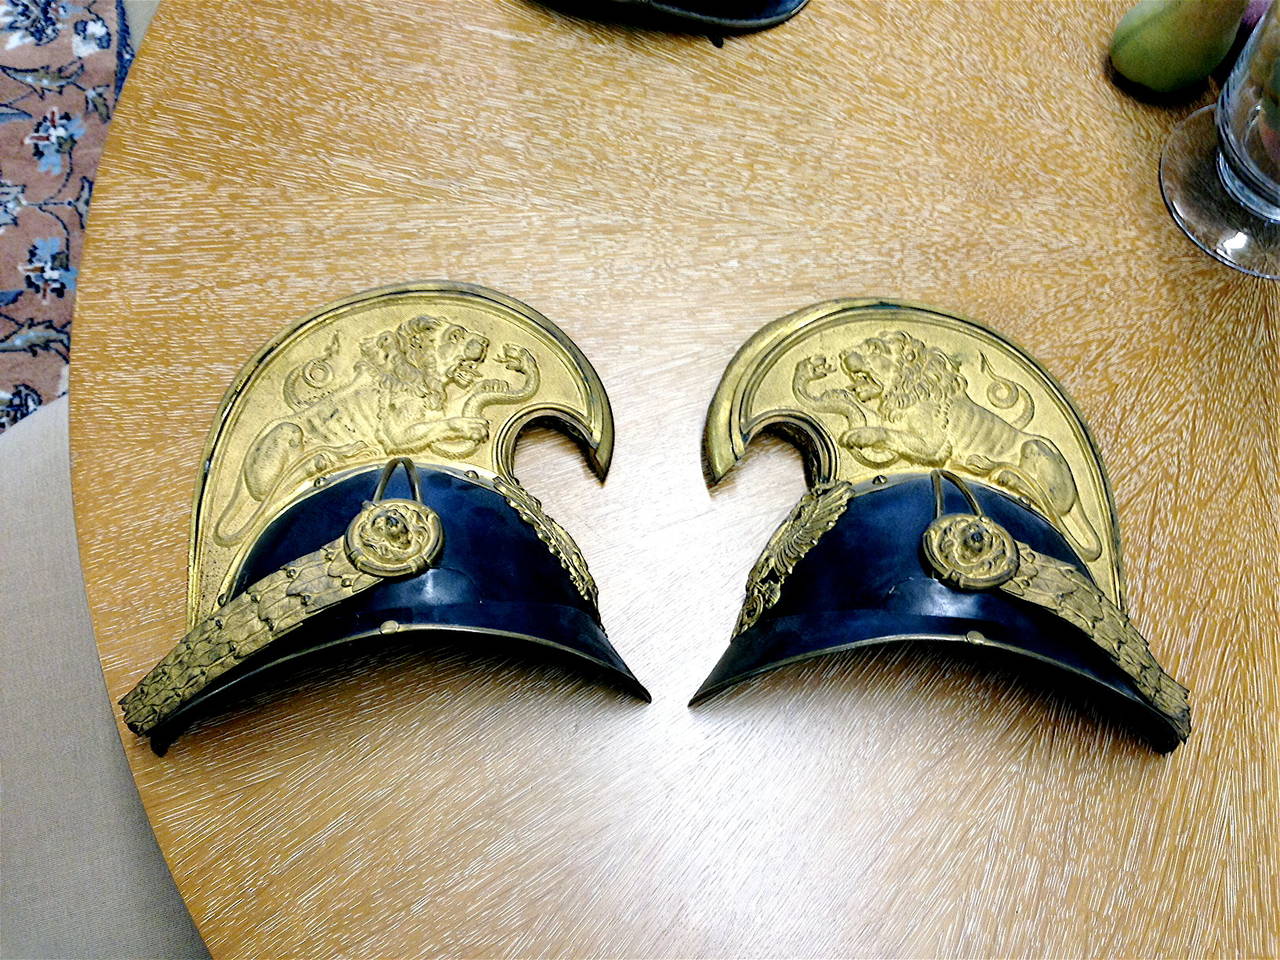 Hübscher österreichischer Helm aus dem 19.
Der Helm ist in zwei Teile geteilt, die bündig an der Wand befestigt werden können.